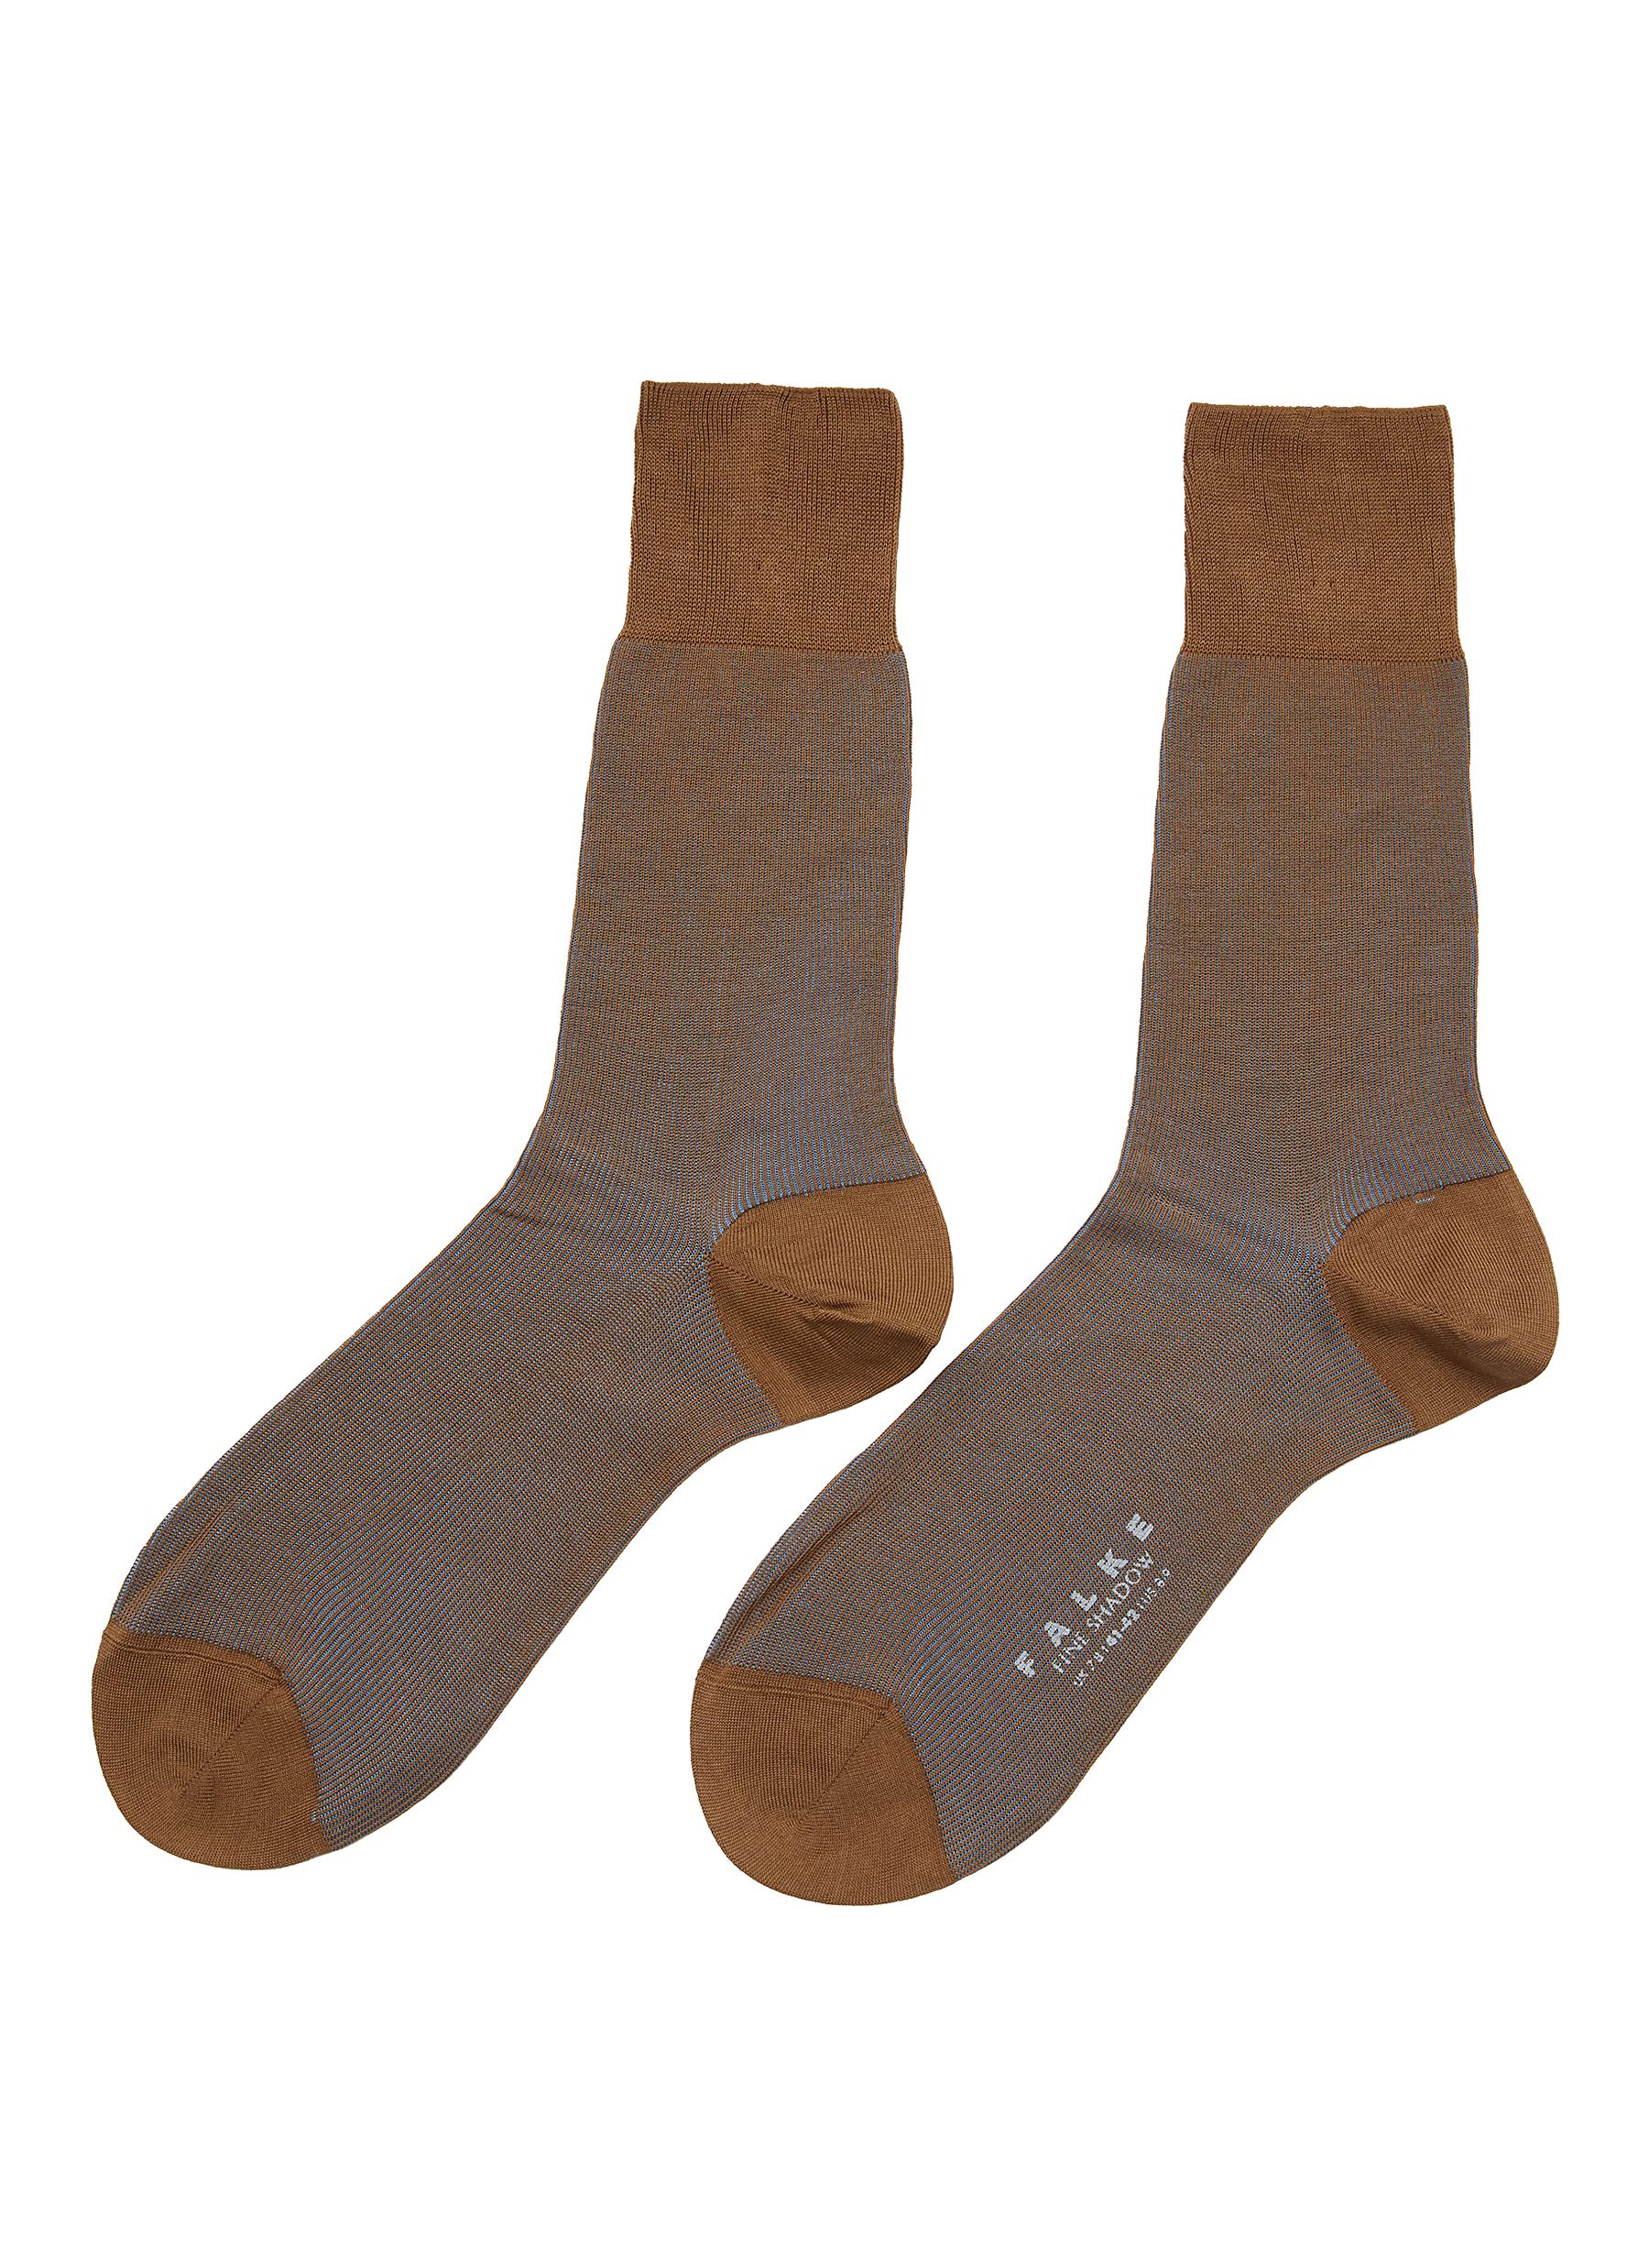 FALKE Soft Merino wool blend socks